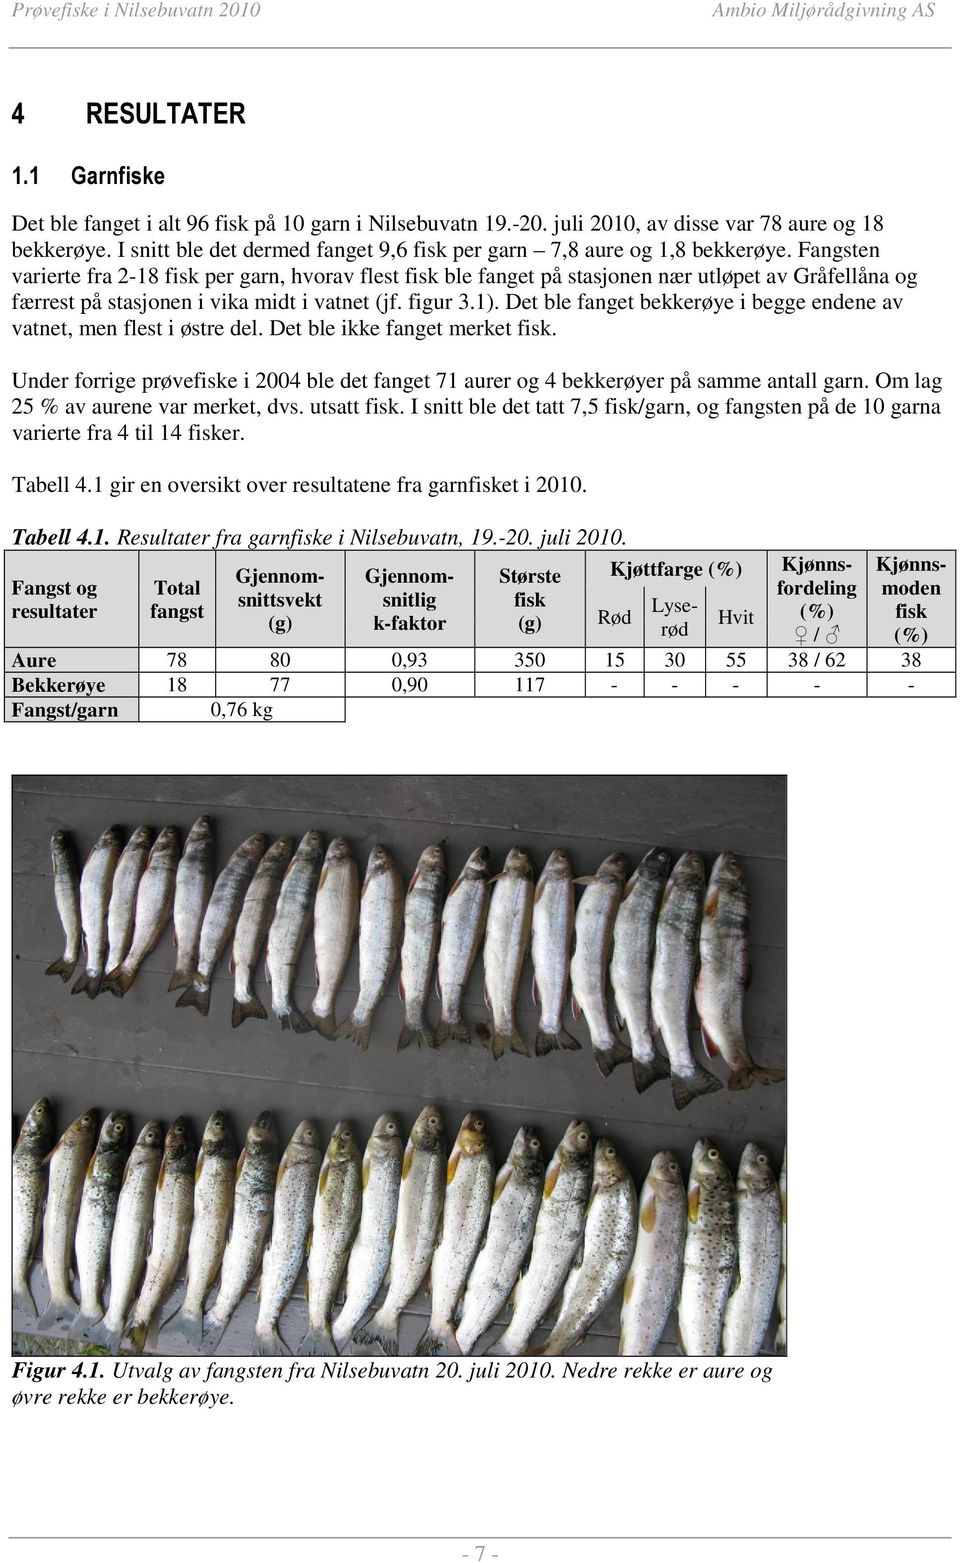 Fangsten varierte fra 2-18 fisk per garn, hvorav flest fisk ble fanget på stasjonen nær utløpet av Gråfellåna og færrest på stasjonen i vika midt i vatnet (jf. figur 3.1).